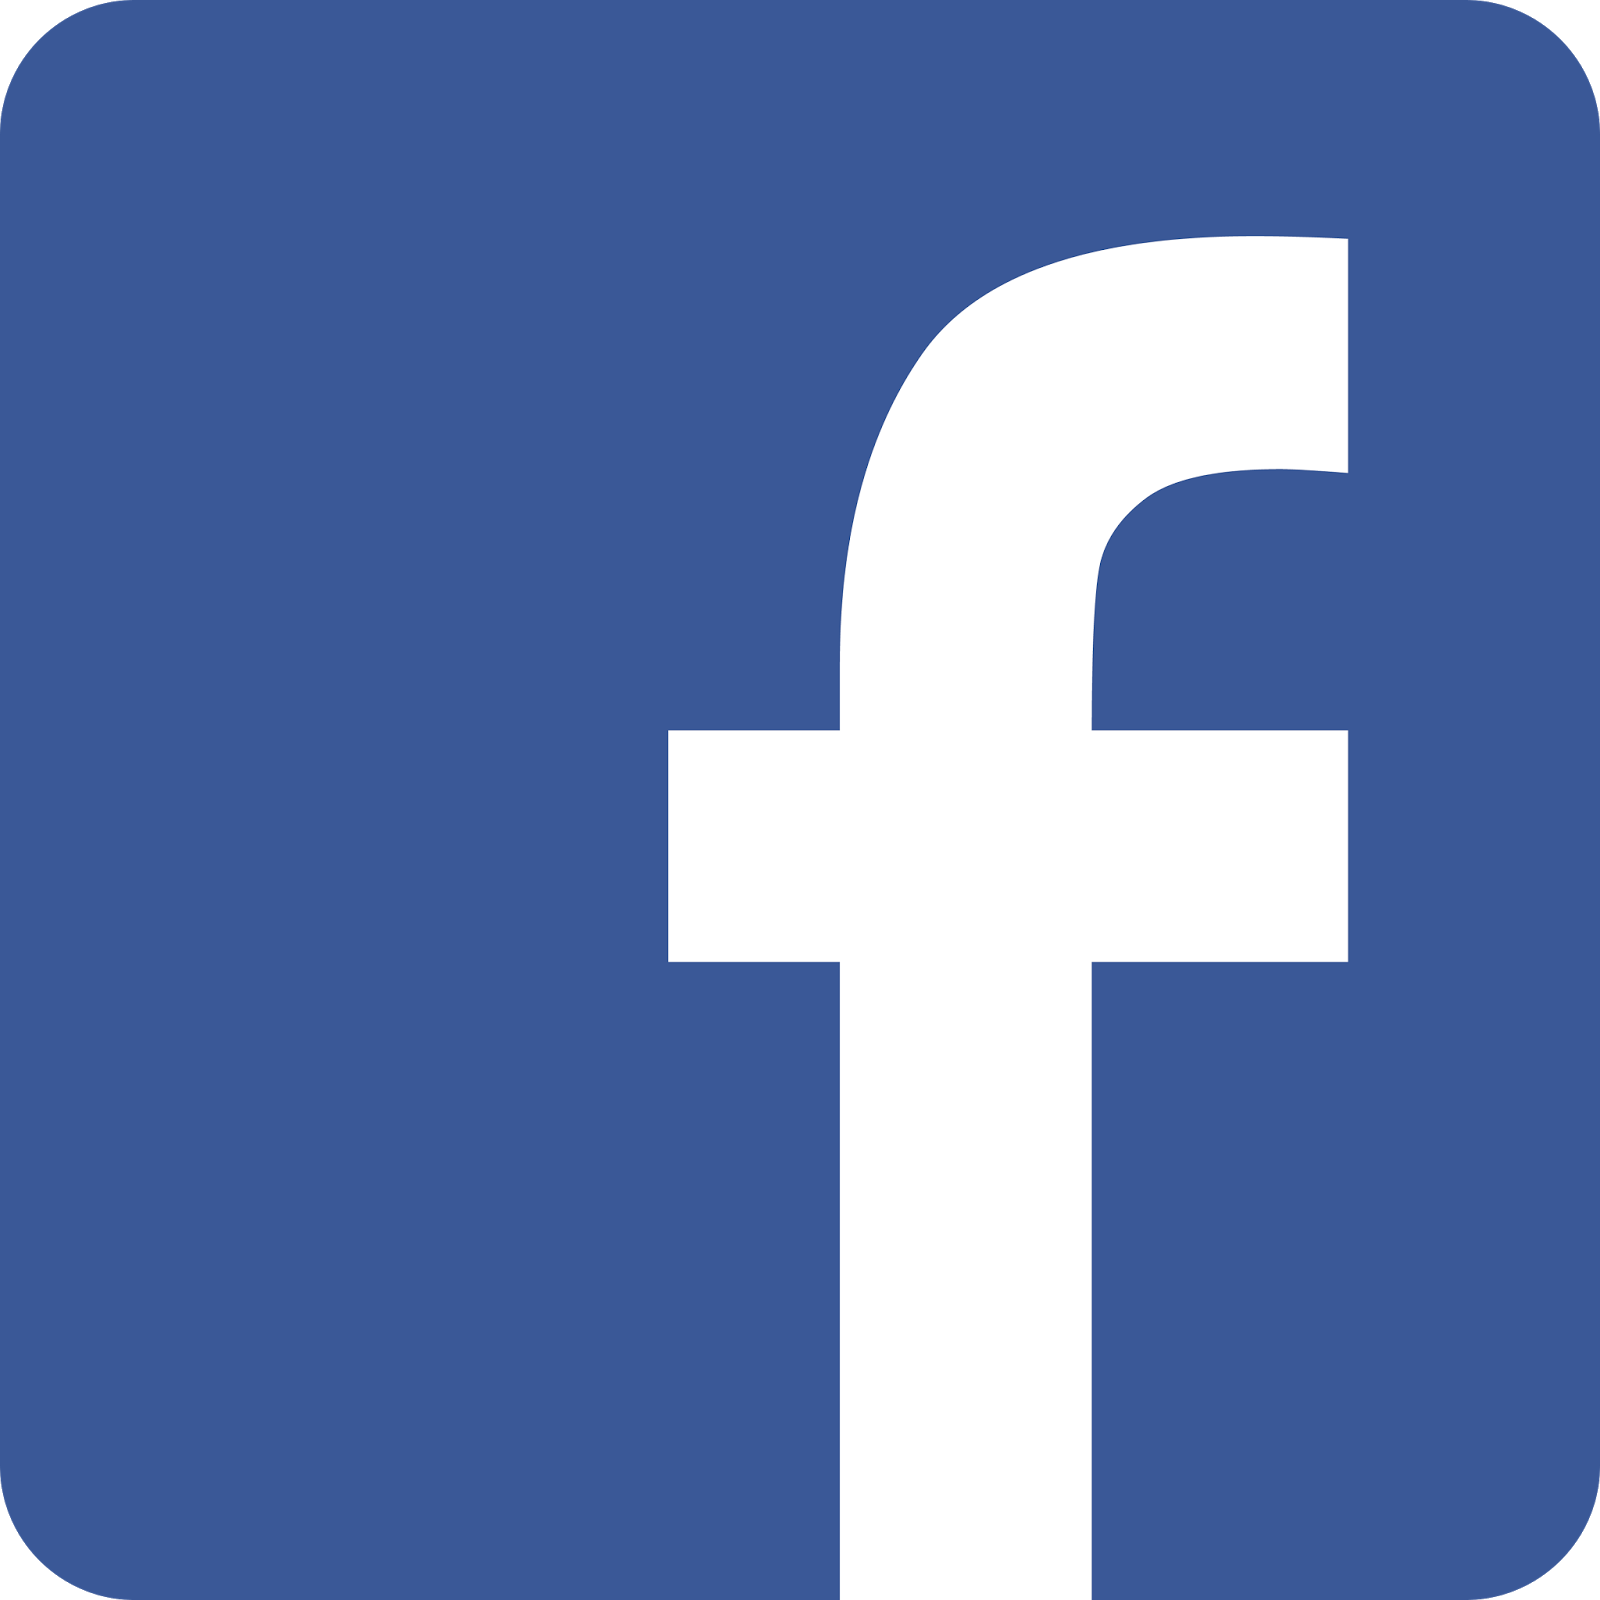 פייסבוק - Facebook